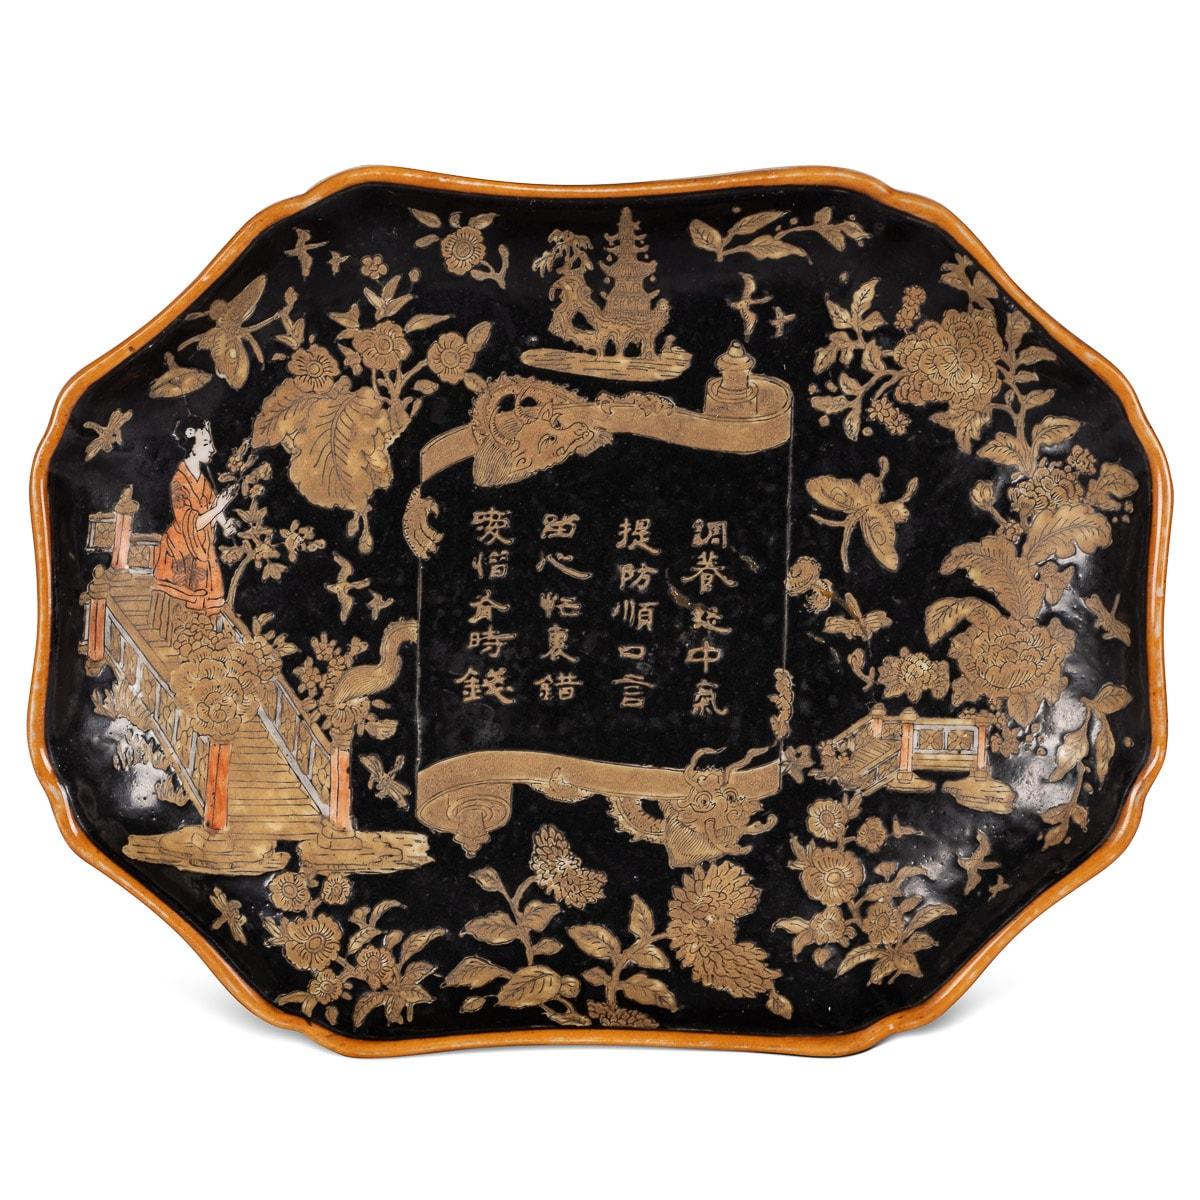 Paire de plats anciens en porcelaine de Chine du XIXe siècle, peints à la main en émail polychrome noir de scènes traditionnelles, de rinceaux avec des dragons naissants, d'une pagode ainsi que d'un environnement floral et feuillu. Le centre du plat